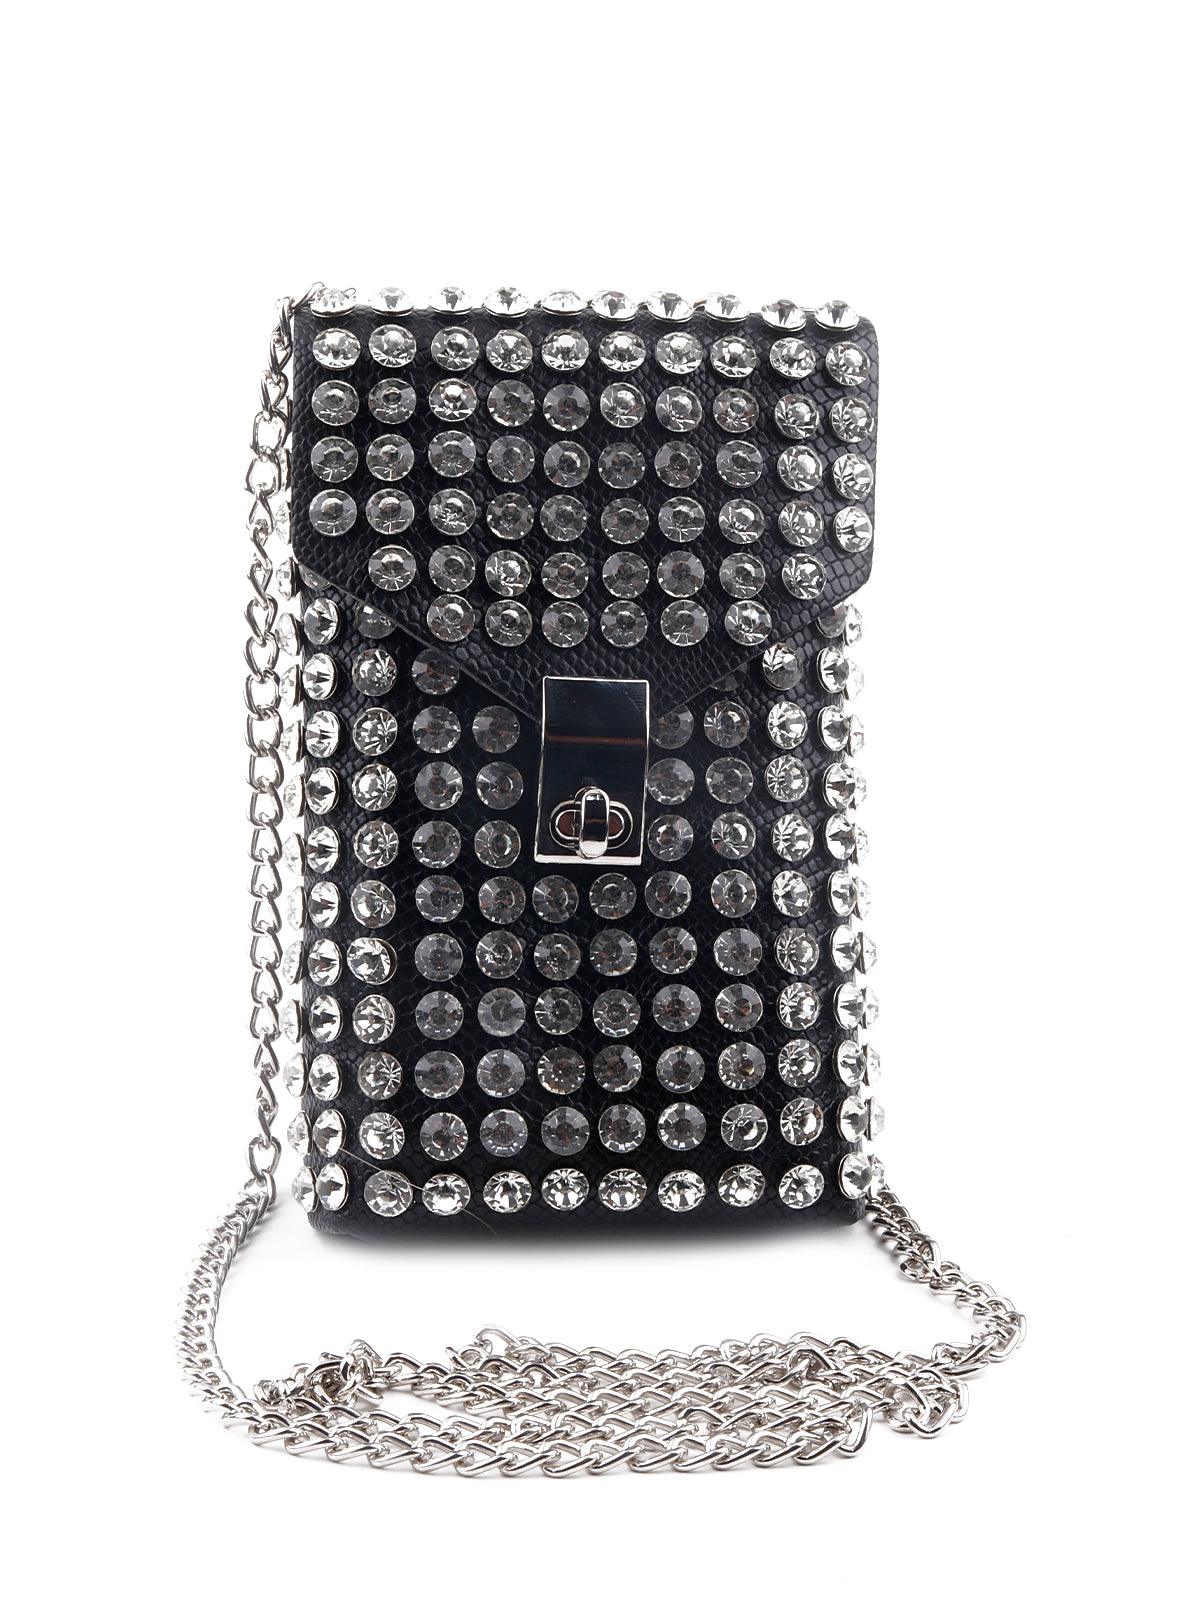 Gorgeous black studded belt bag for women - Odette